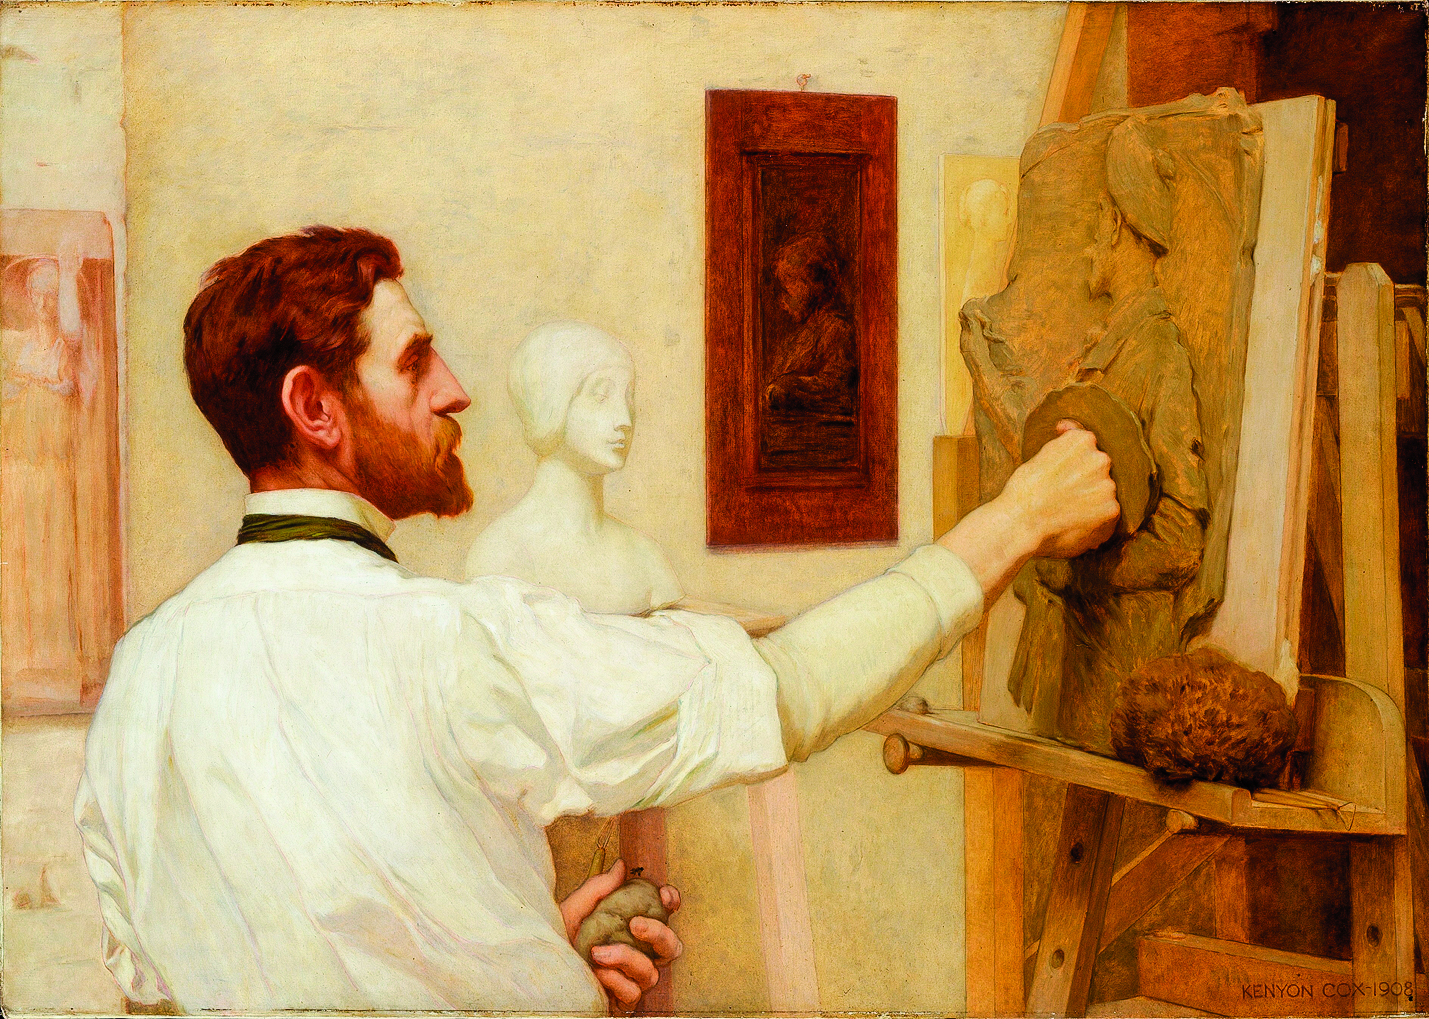 畫家肯揚考克斯（Kenyon Cox）的作品《奧古斯都聖高登斯》肖像畫，於1908年應大都會藝術博物館之邀，為紀念奧古斯都聖高登斯所舉辦的作品展而作，此幅畫描繪奧古斯都聖高登斯在工作室創作的情景。油畫，畫布。（公有領域）